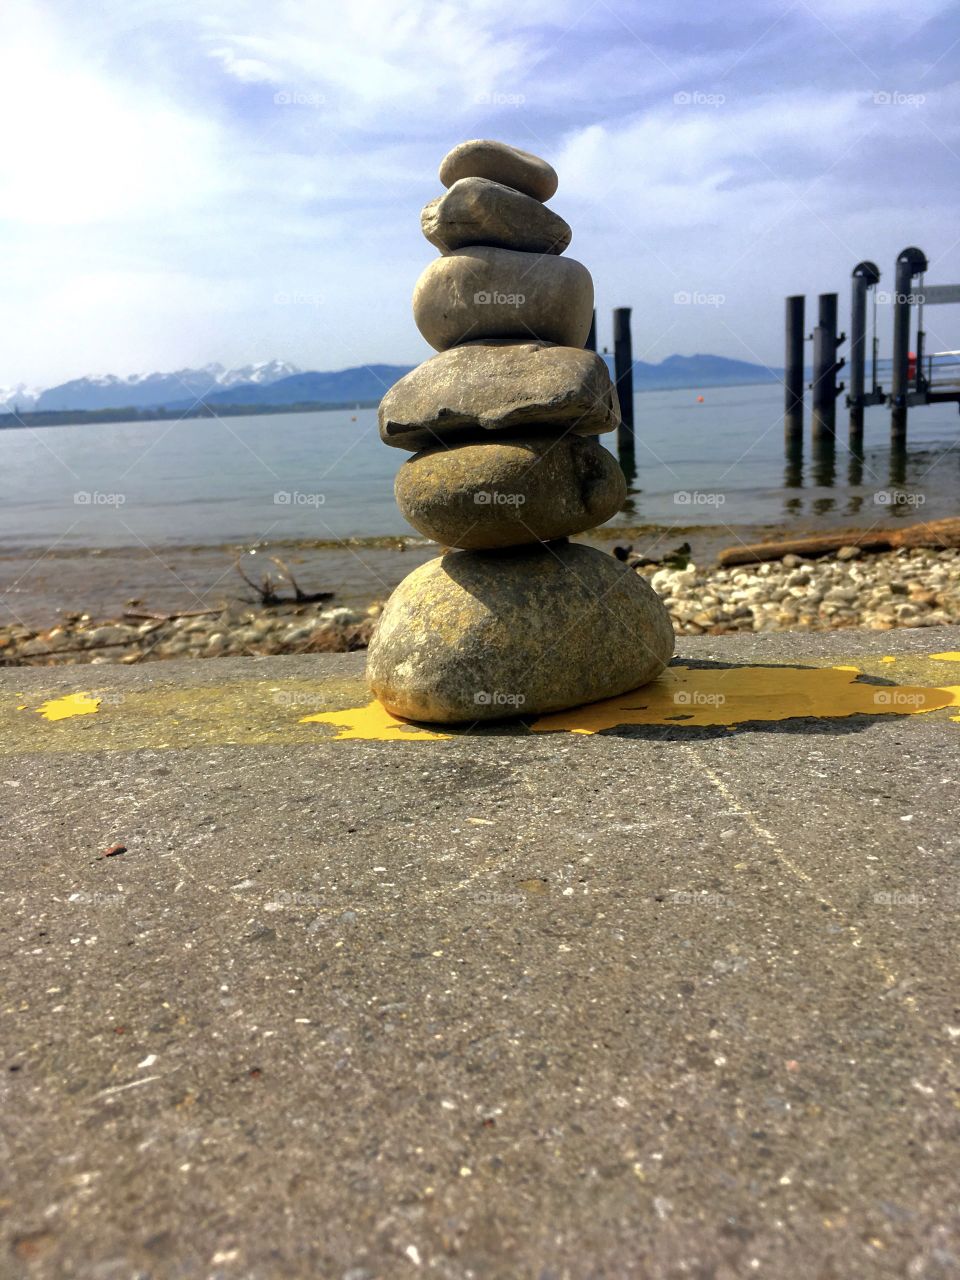 Rock + Sea = searock.